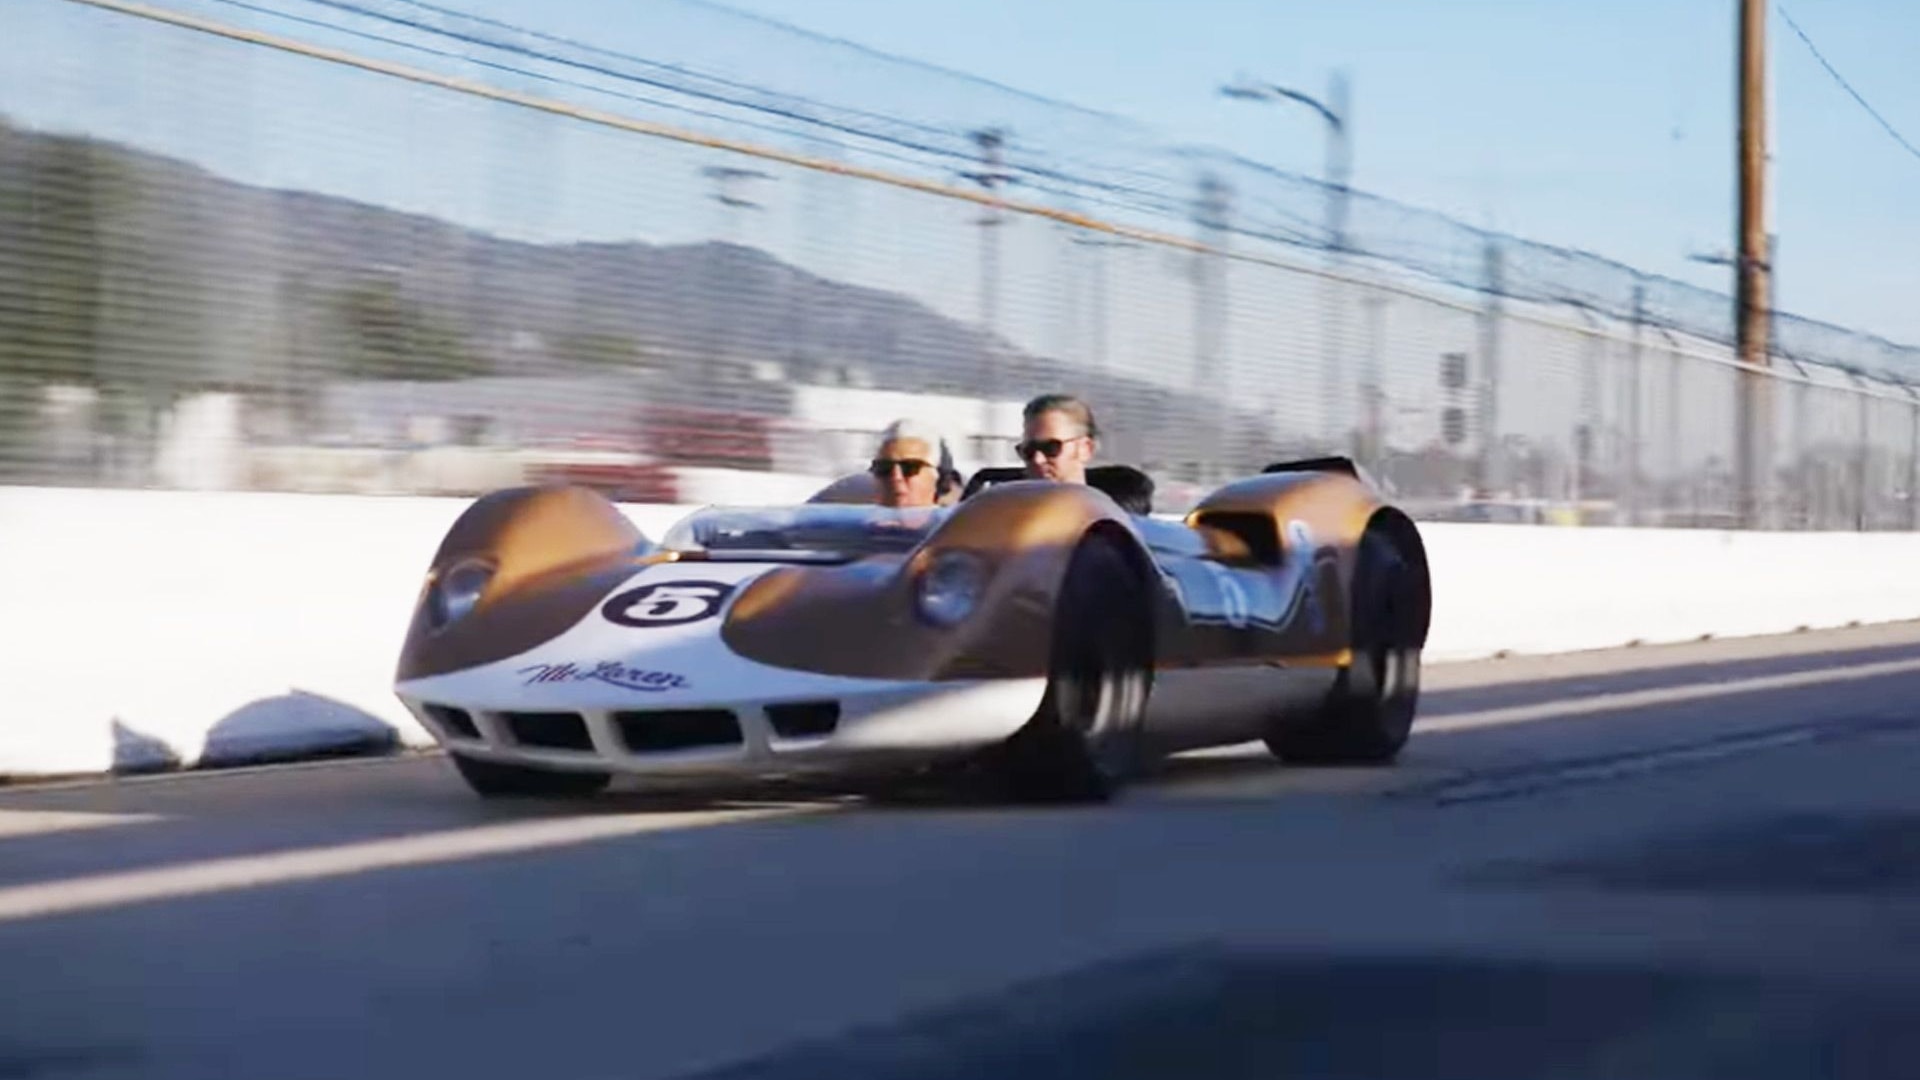 1964 McLaren M1A race car